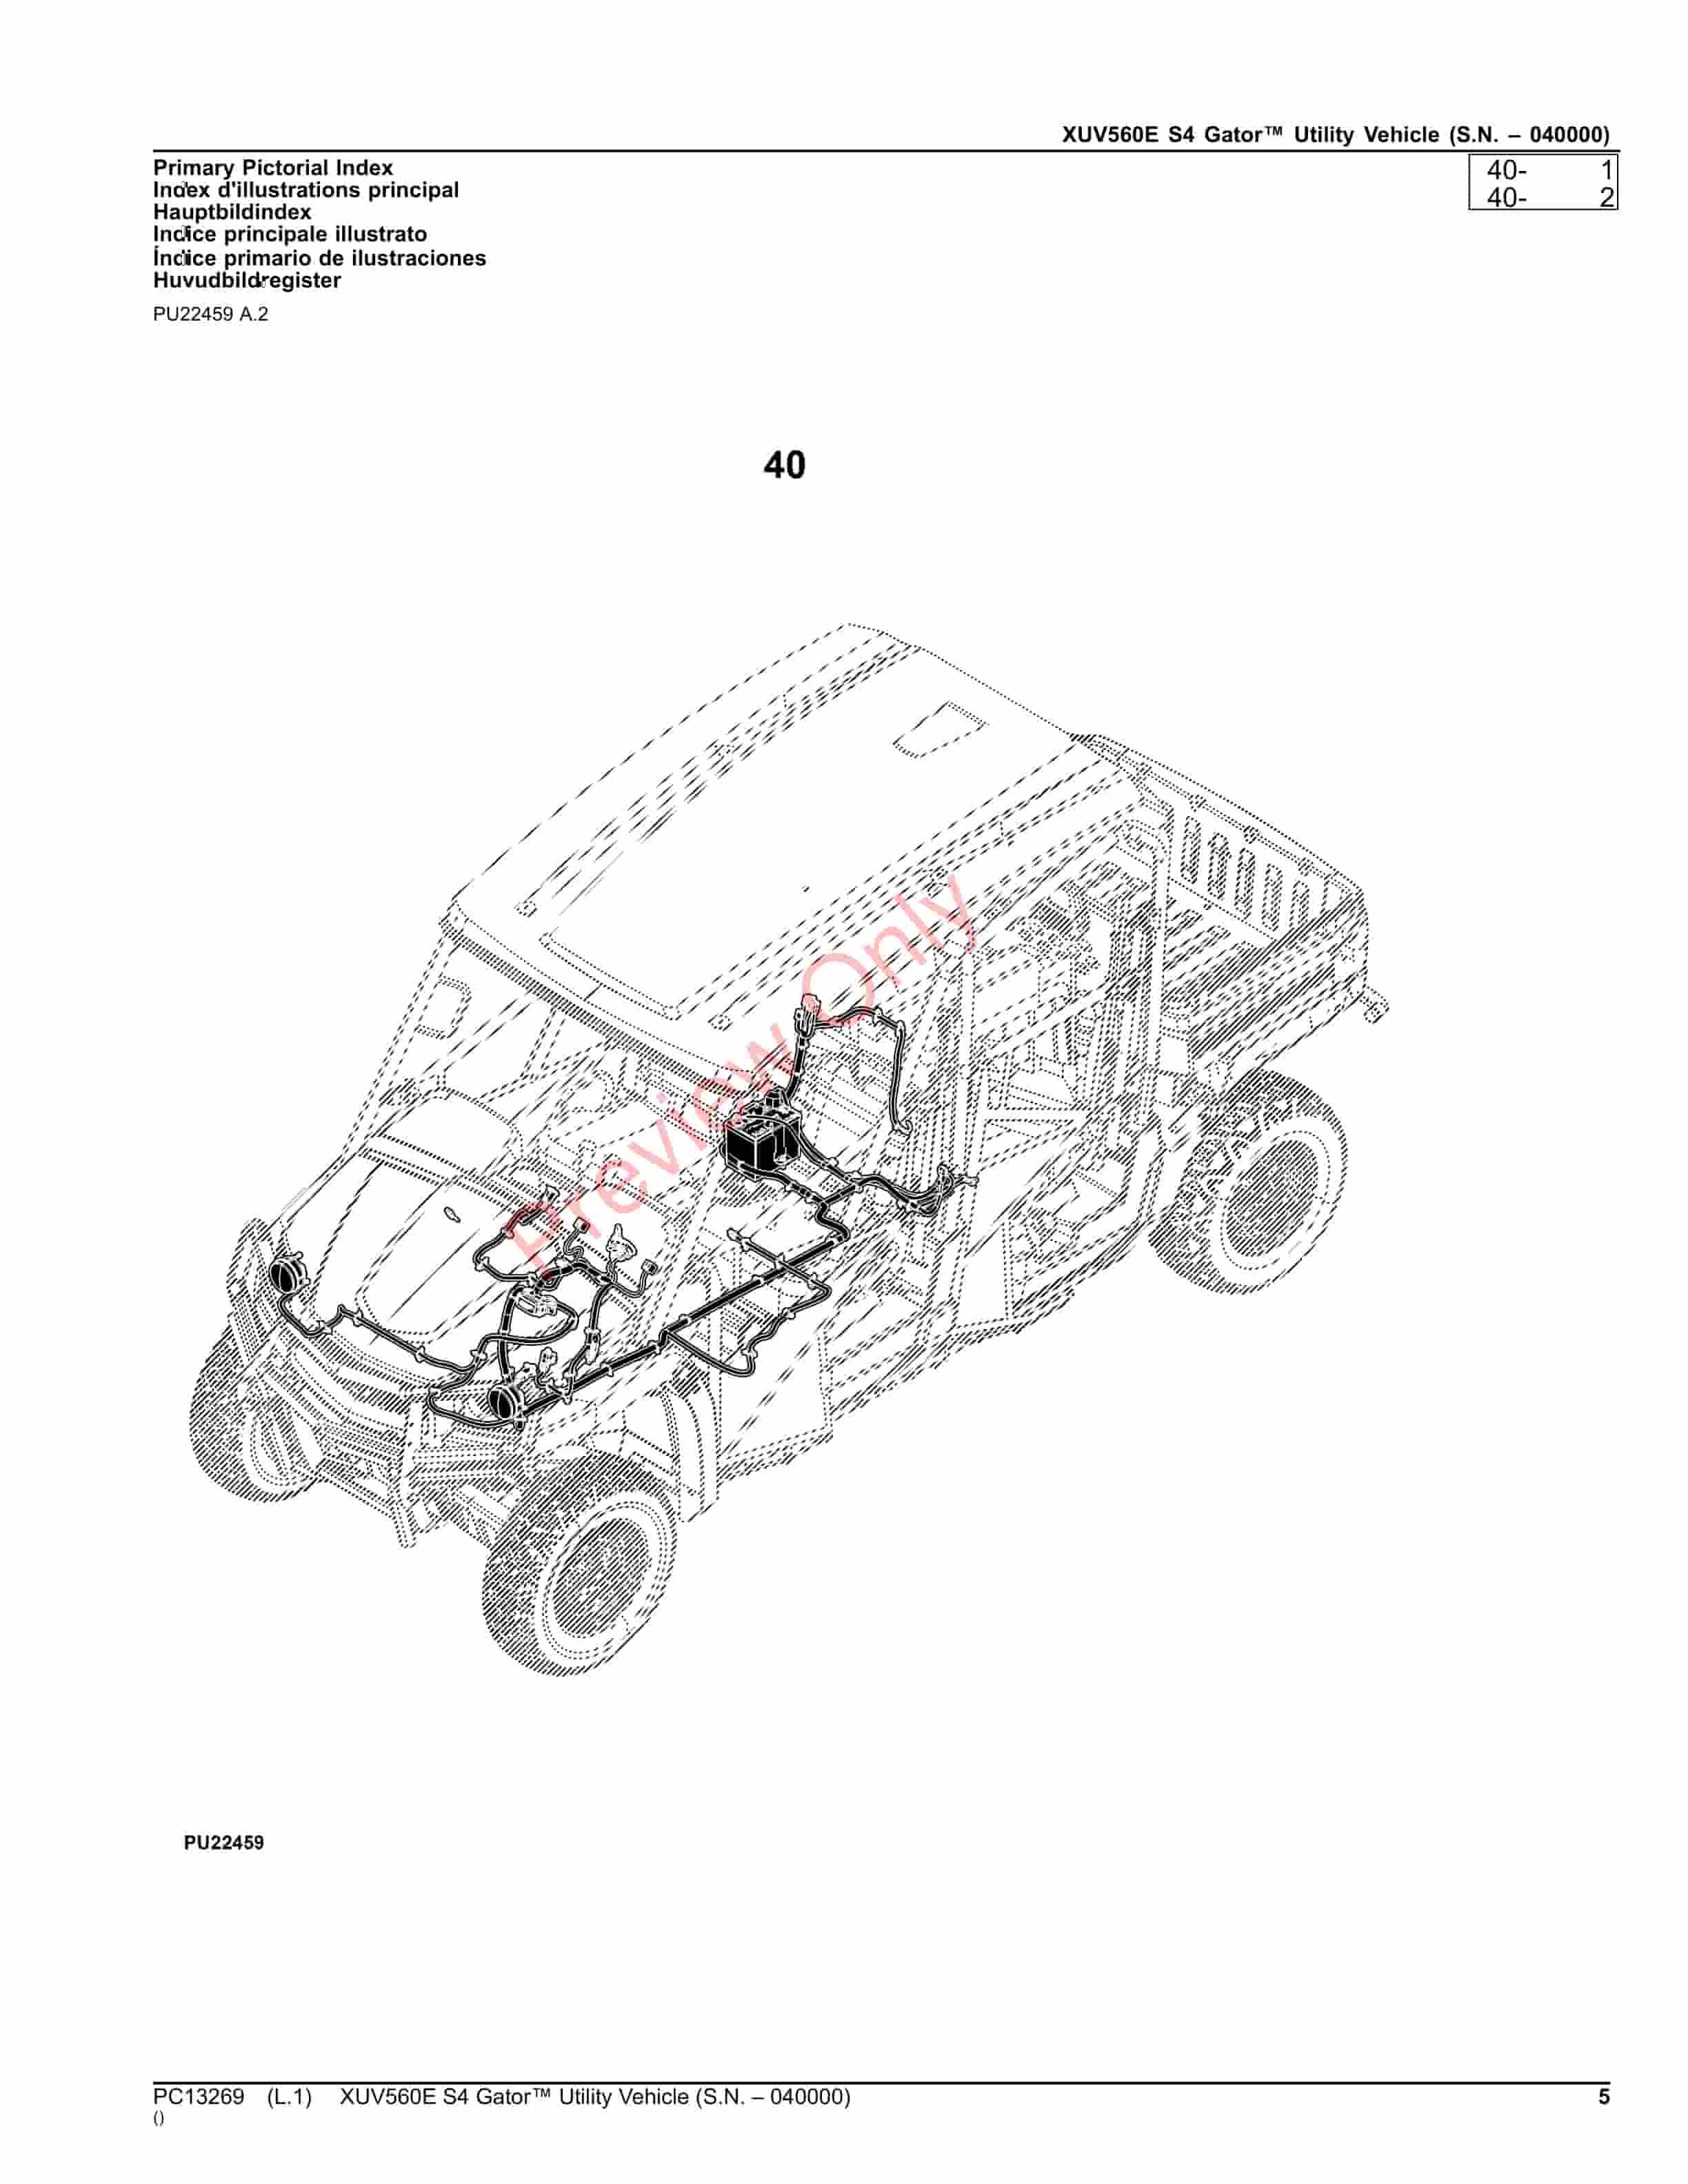 John Deere XUV560E S4 Gator Utility Vehicle (S.N. 040000) Parts Catalog PC13269 23NOV23-5